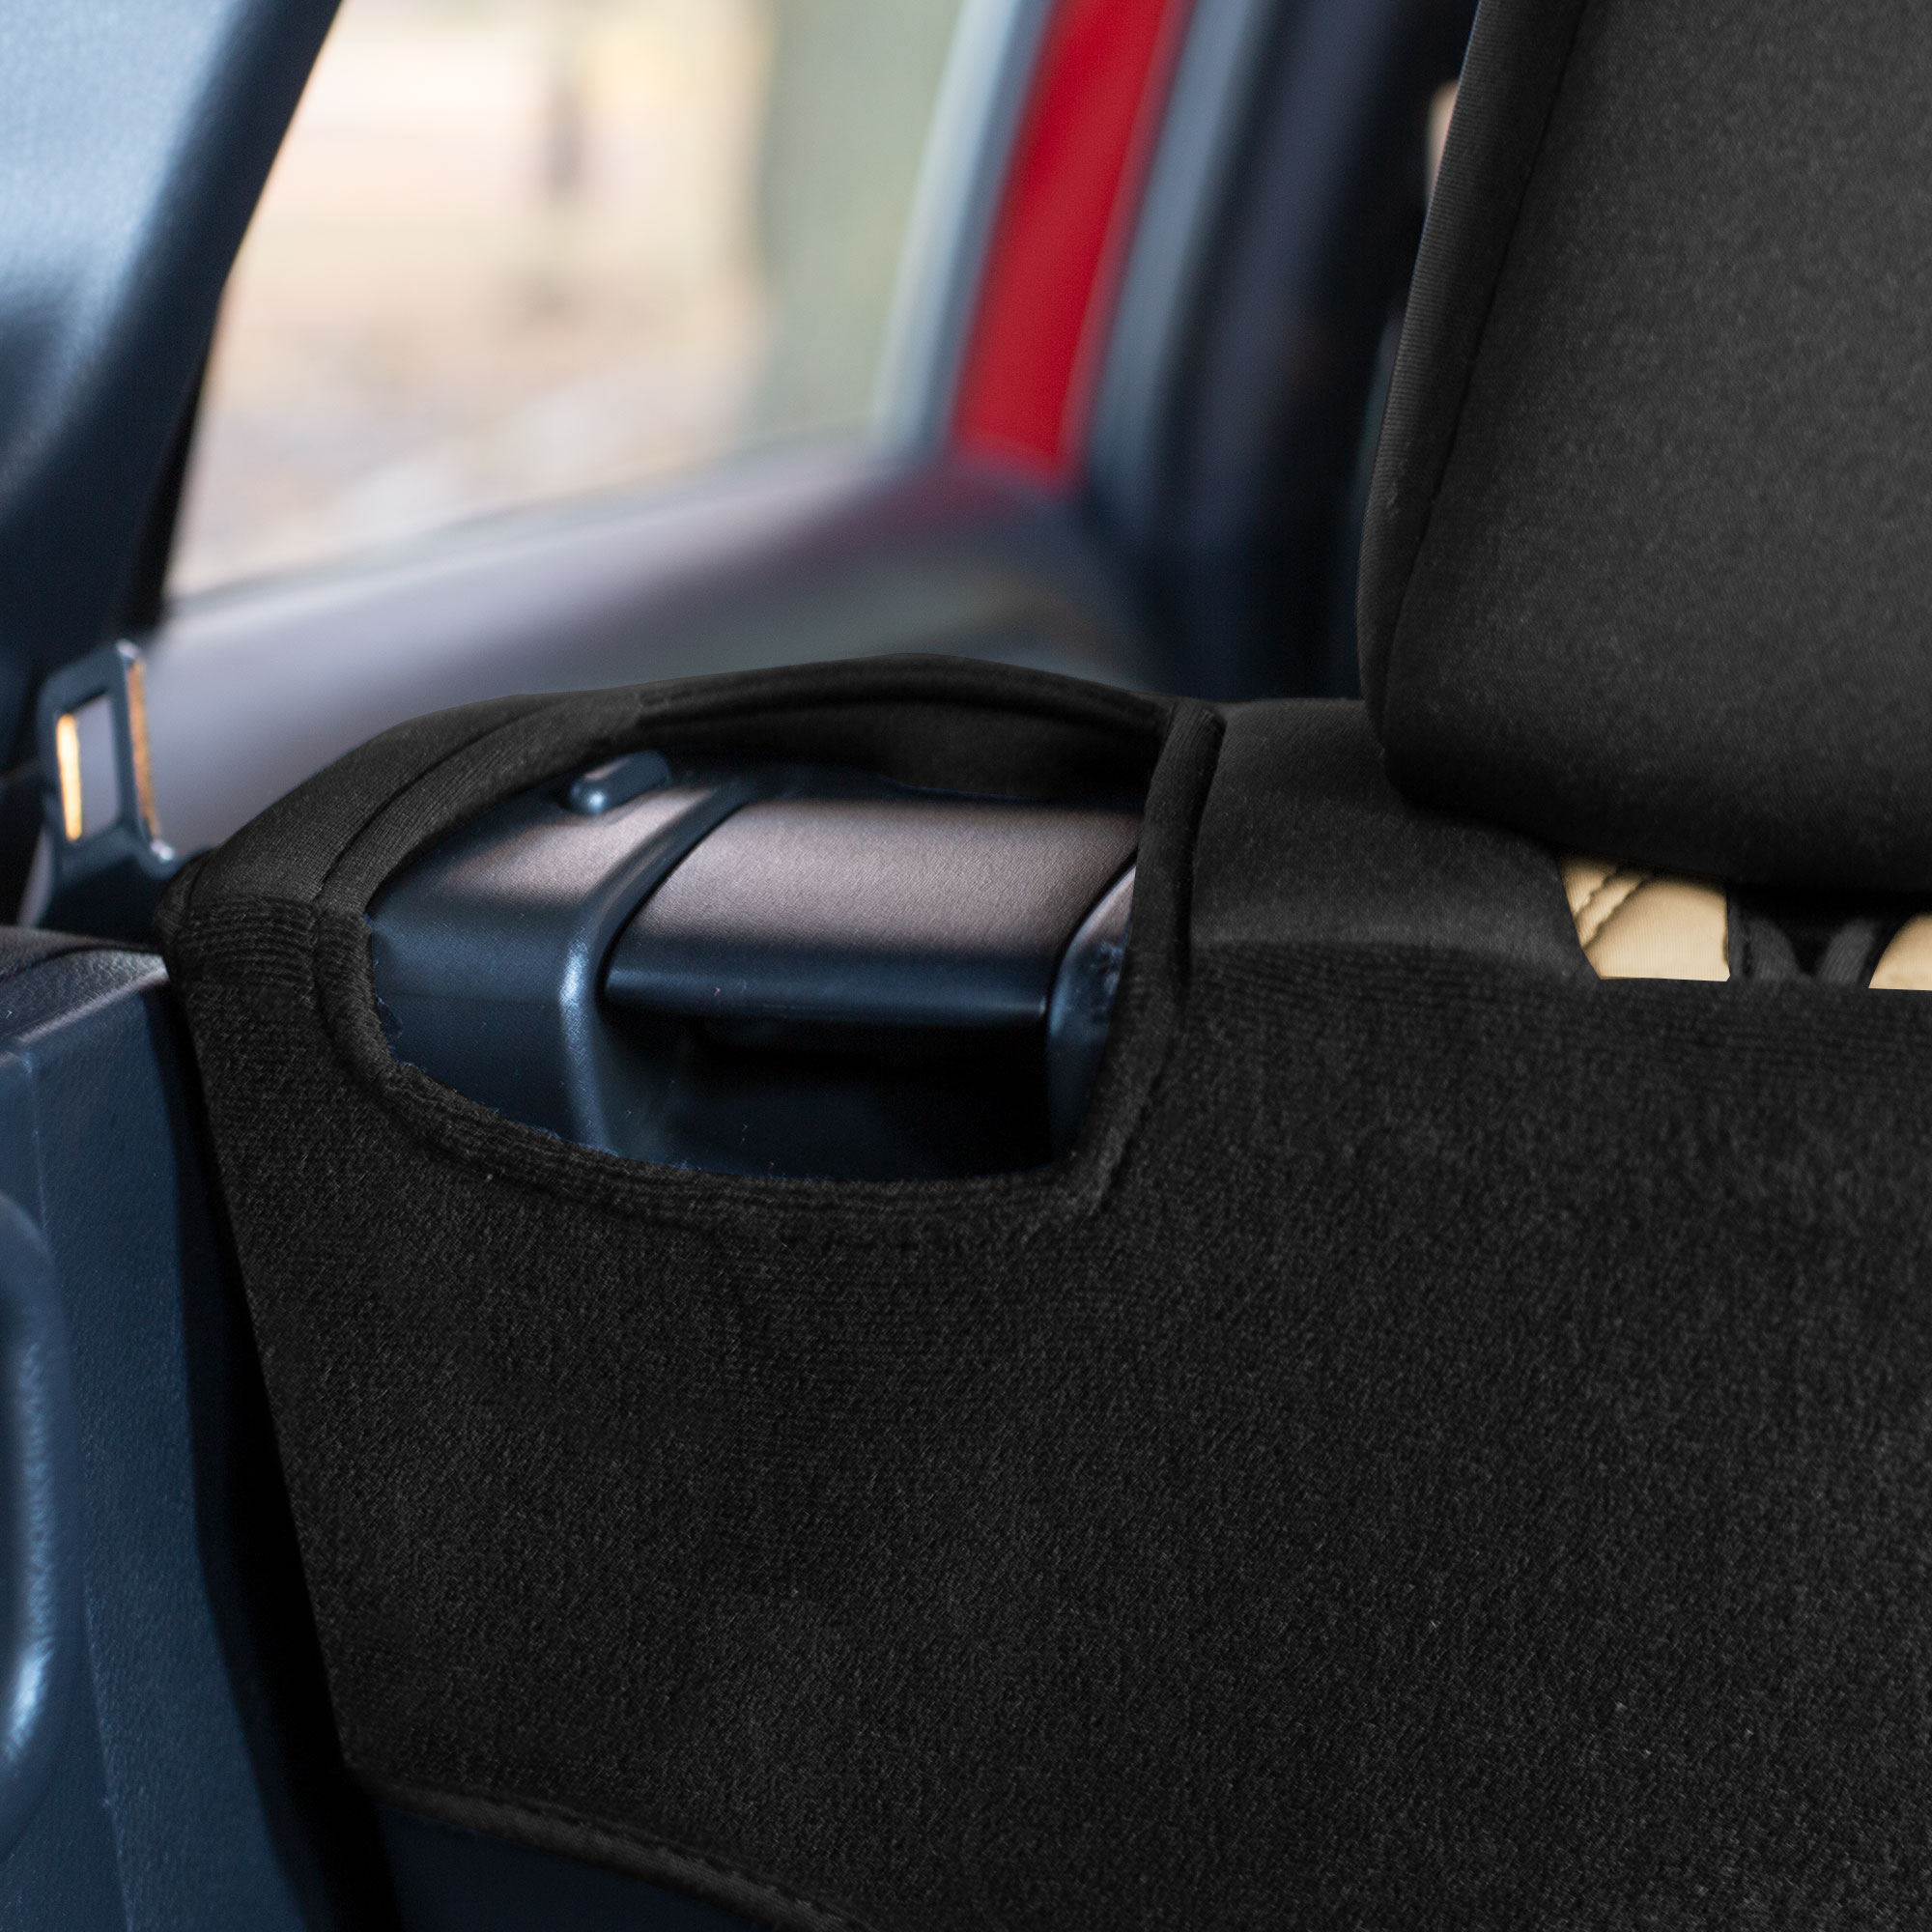 FH Group Custom Fit Seat Covers for 2021-2022 Toyota Rav4 Hybrid | Hybrid Prime Full Set